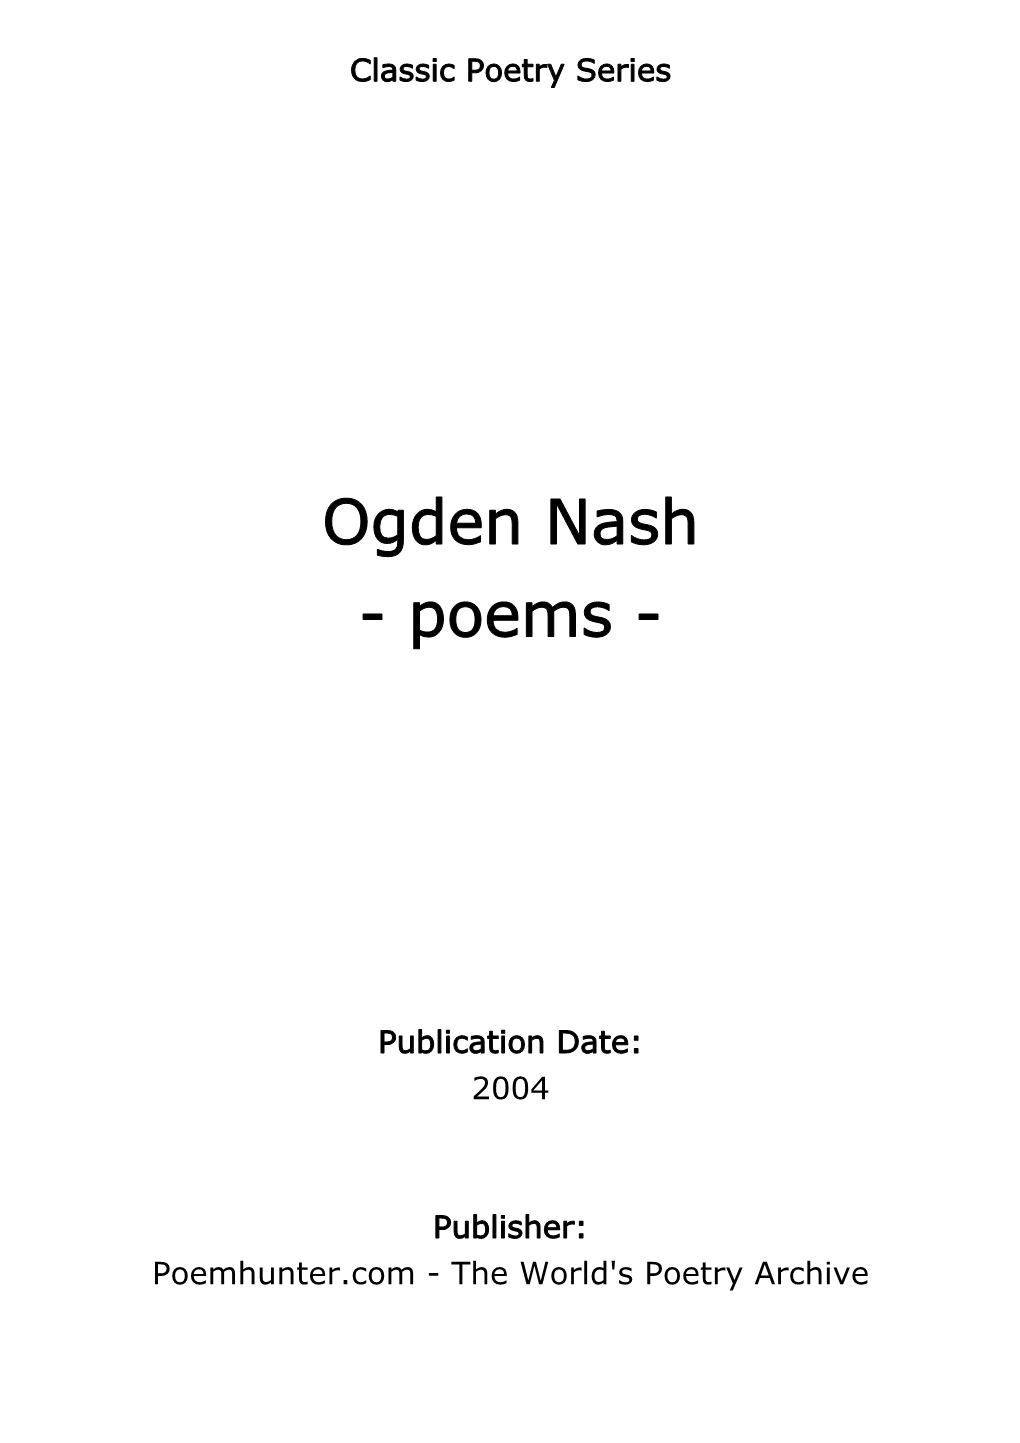 Ogden Nash - Poems